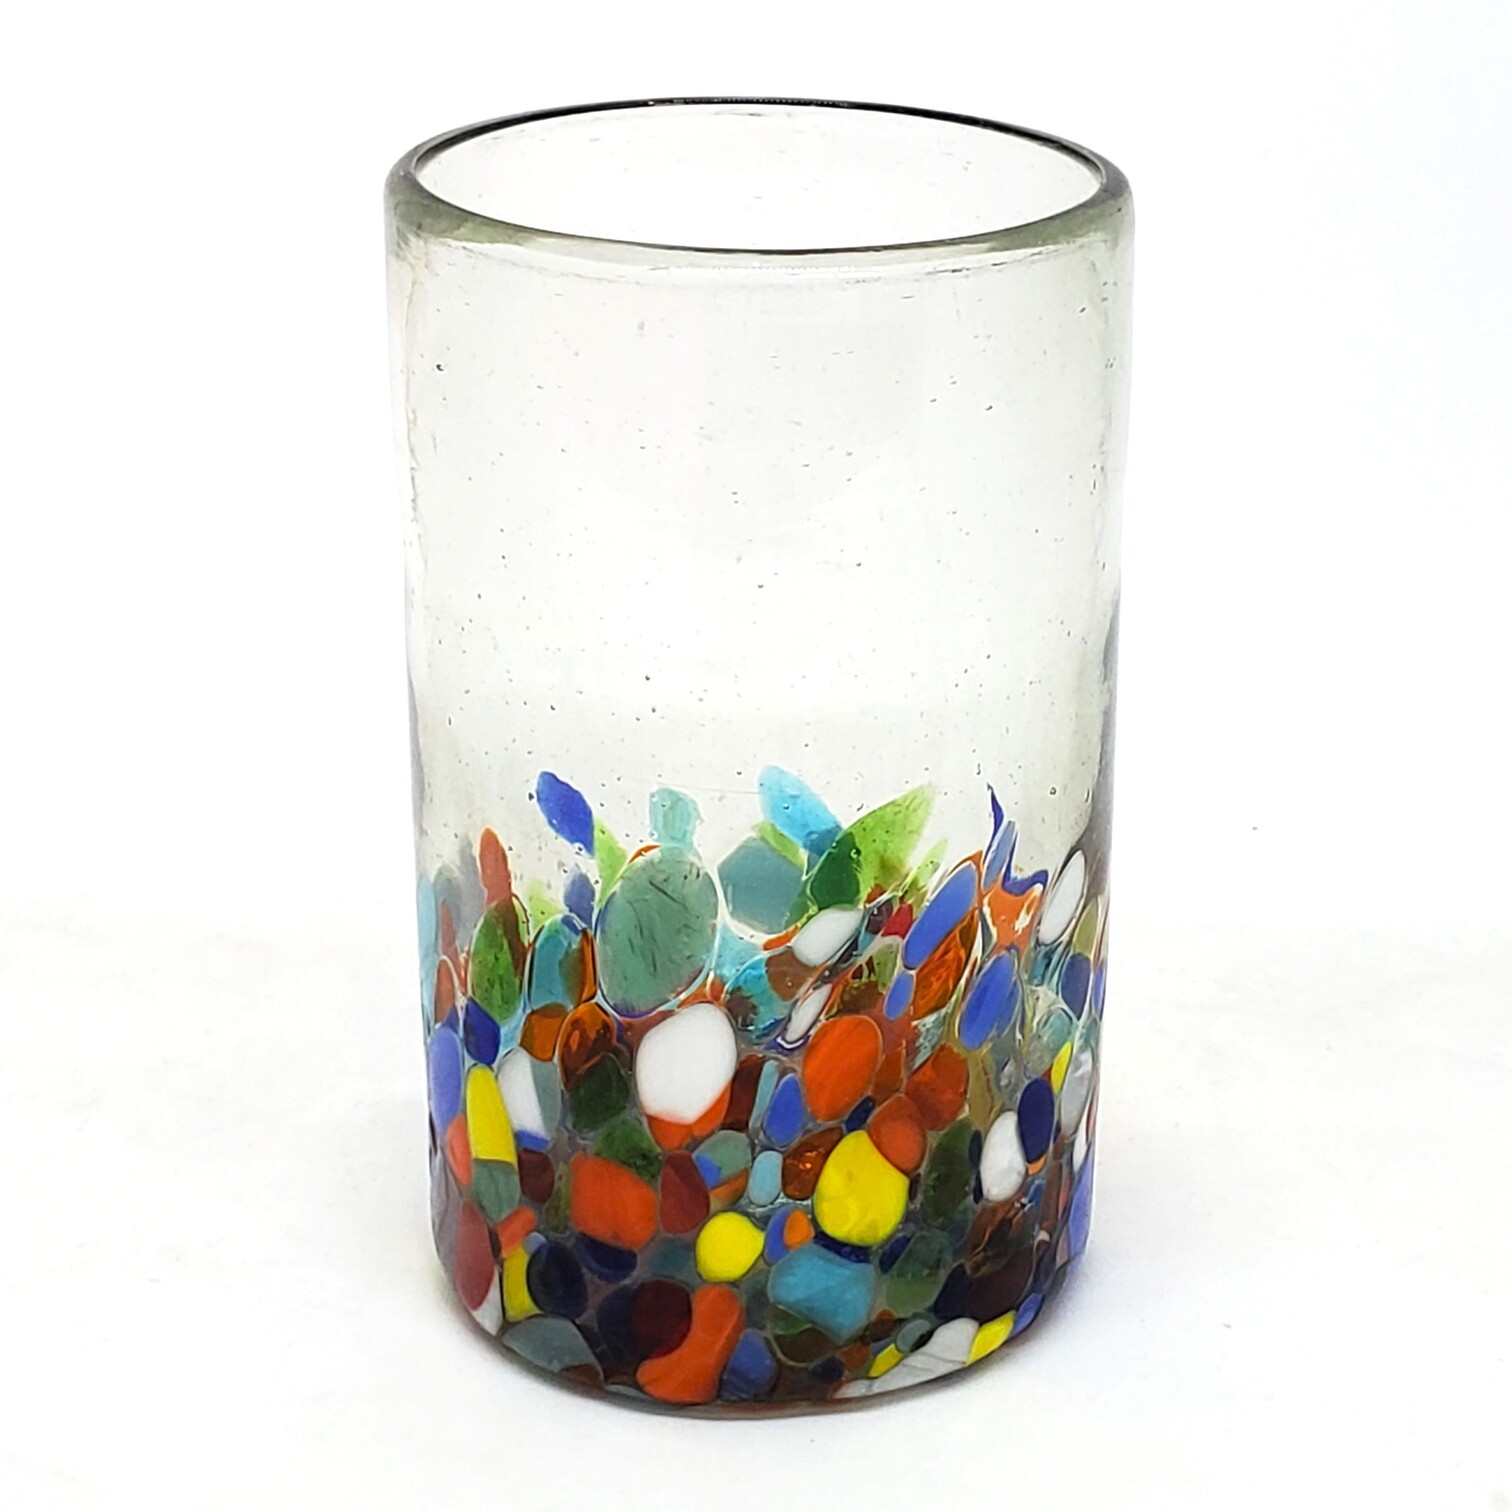 VIDRIO SOPLADO / vasos grandes 'Cristal & Confeti', 14 oz, Vidrio Reciclado, Libre de Plomo y Toxinas